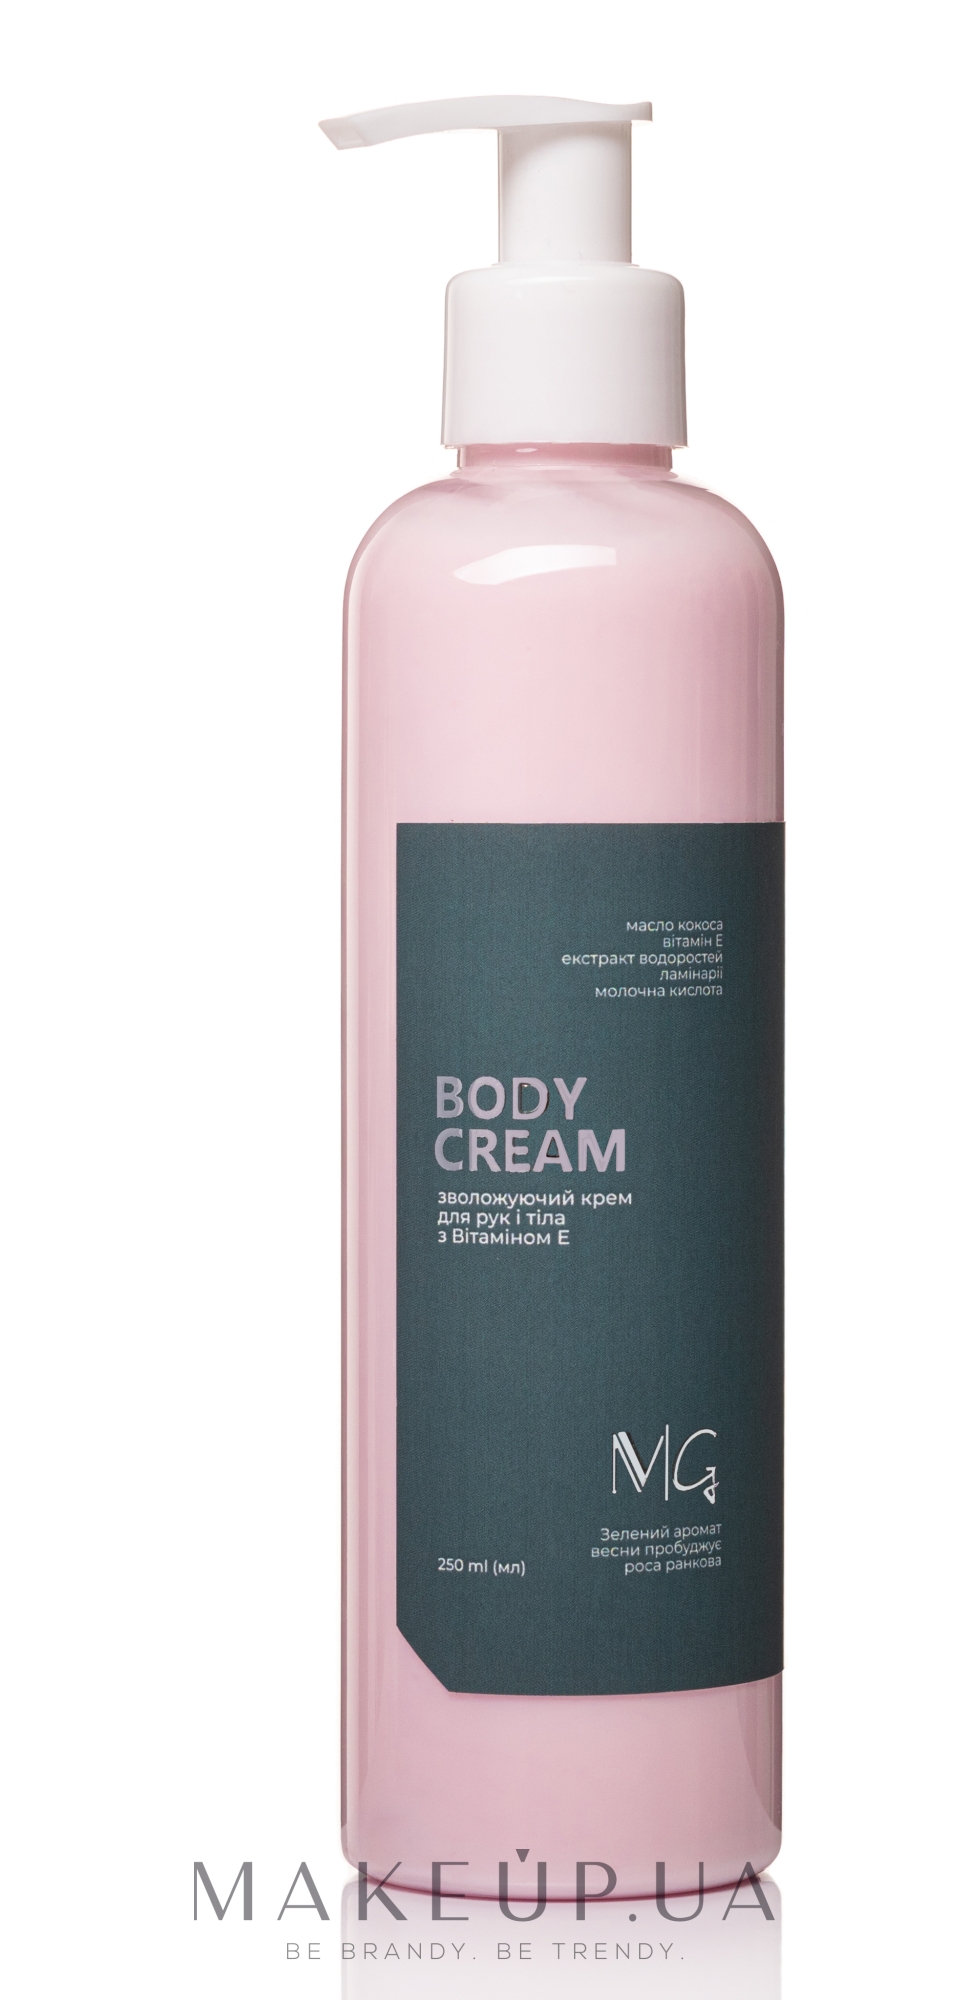 Зволожувальний крем для рук і тіла з вітаміном Е - MG Body Cream — фото 250ml